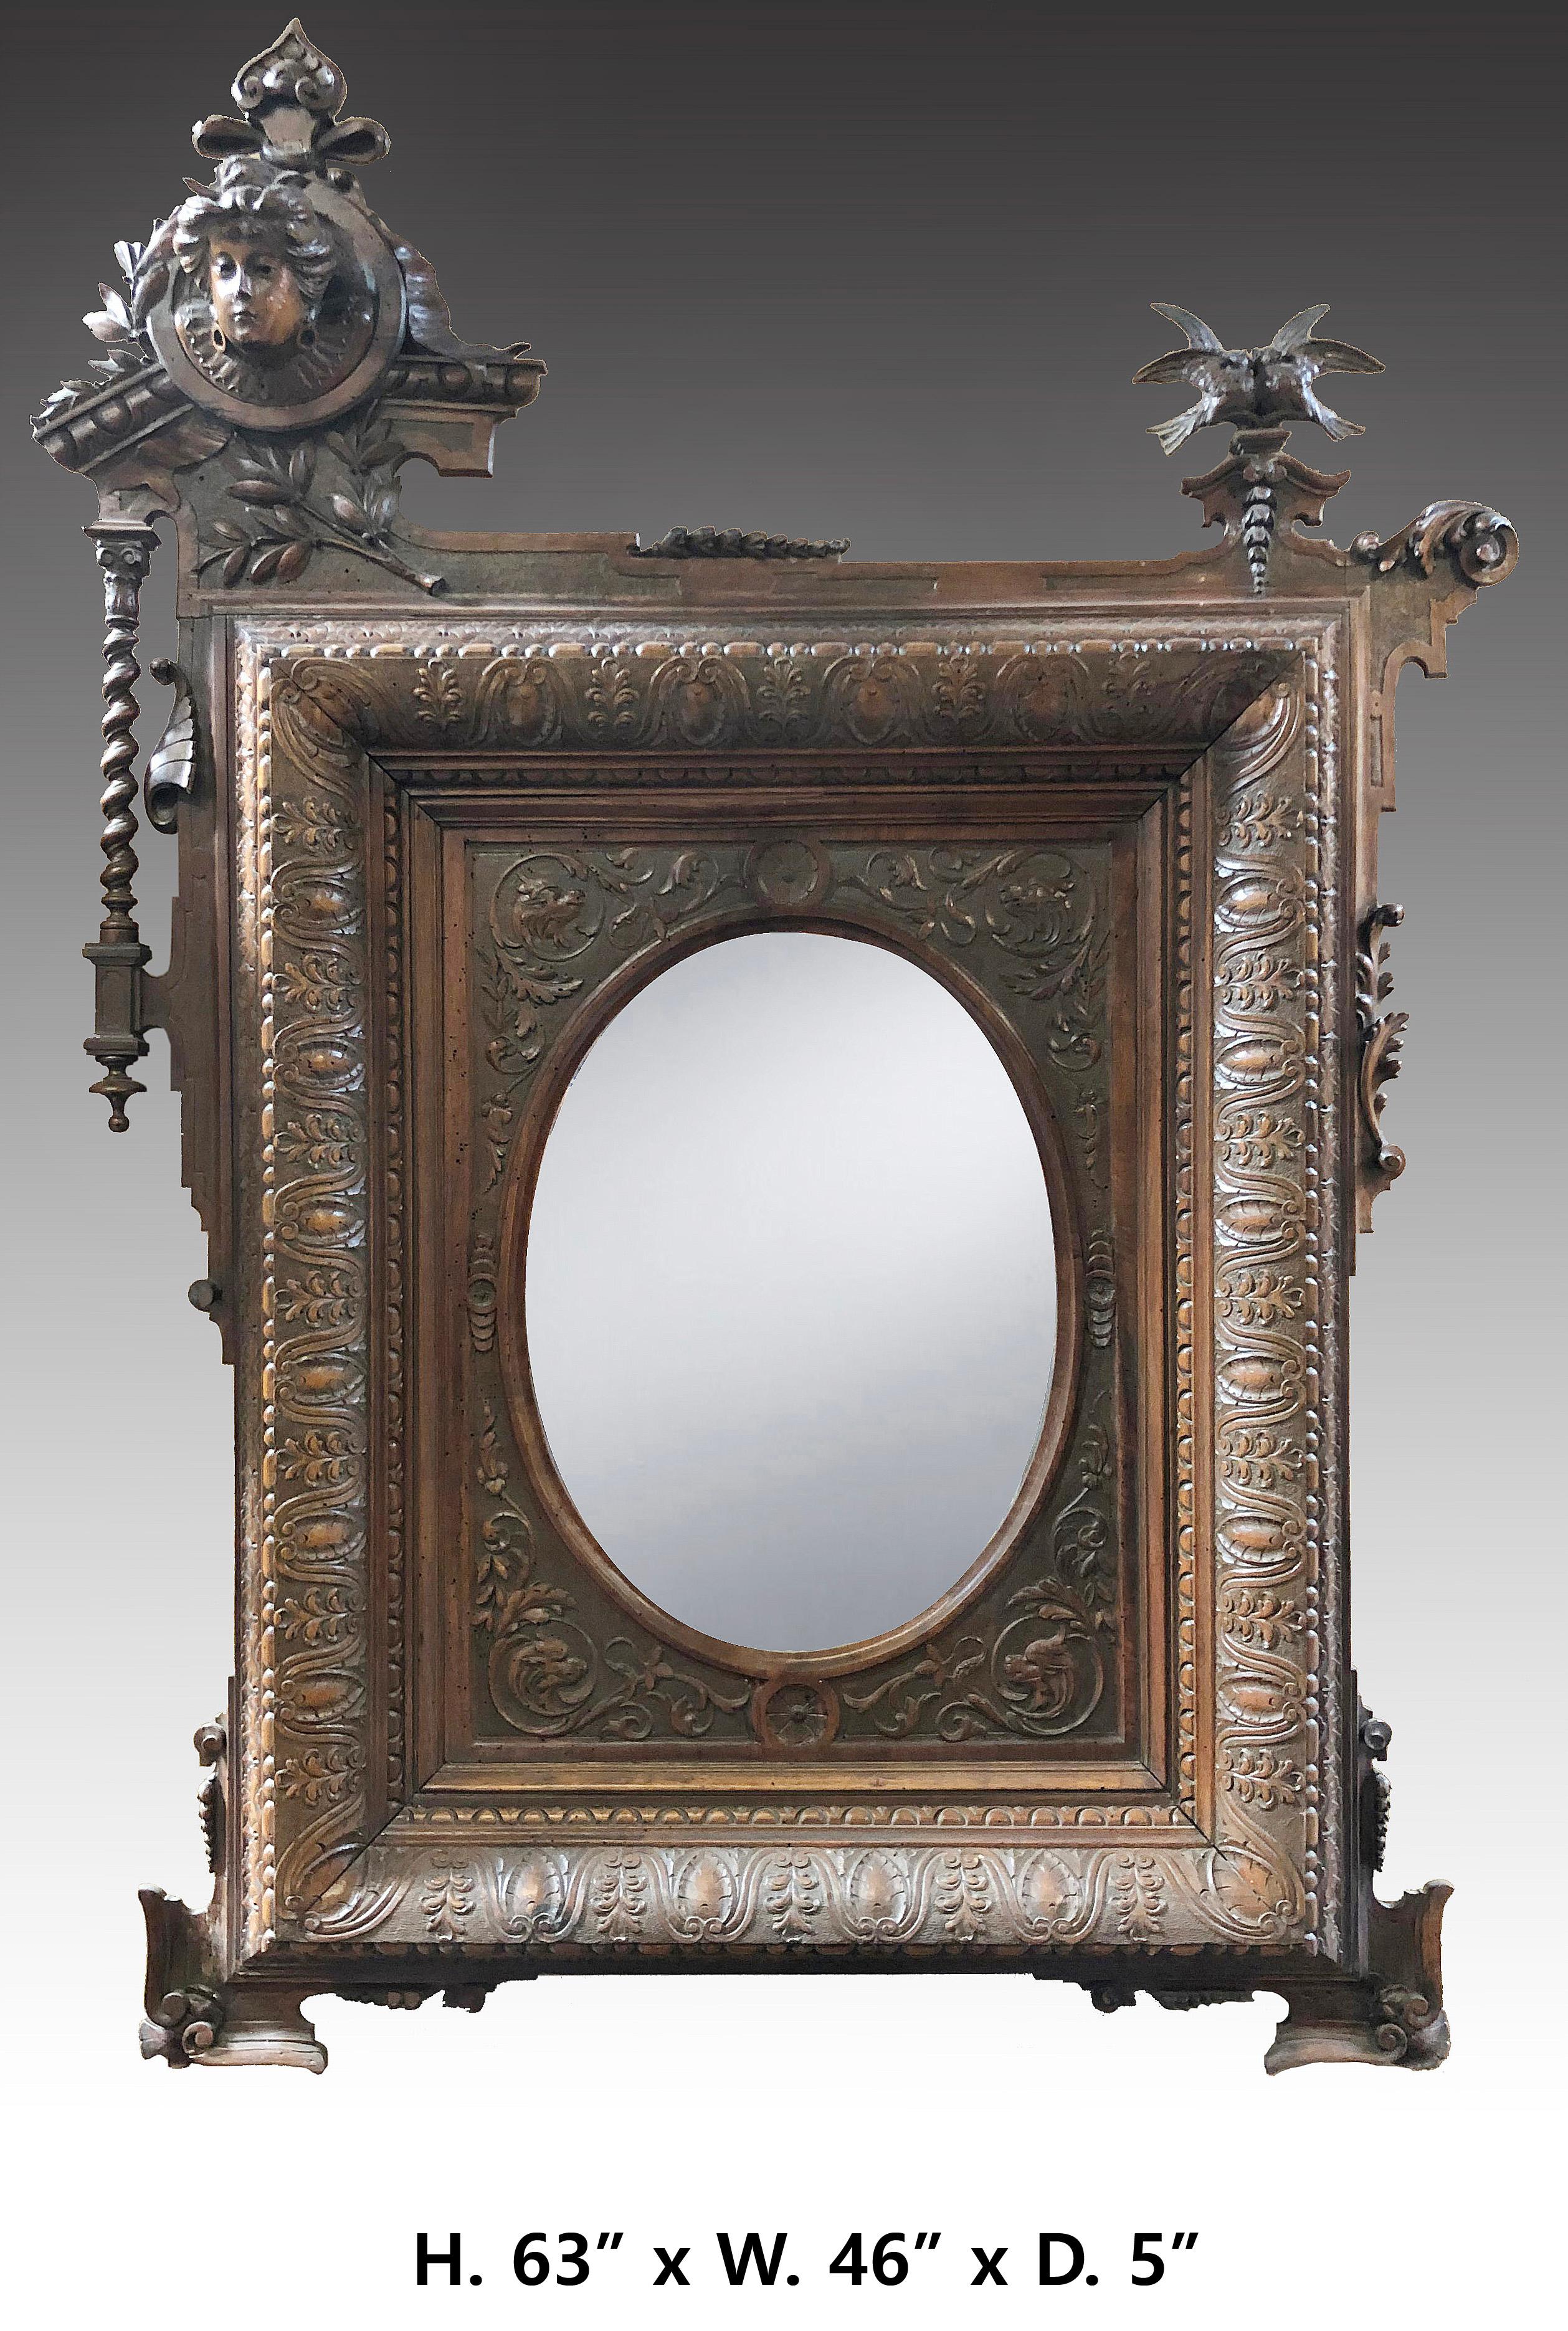 Extrem feine Französisch Jugendstil geschnitzt Nussbaum Spiegel, einzigartigen Stil...
Jedem Detail wurde große Aufmerksamkeit geschenkt.
CIRCA 1900